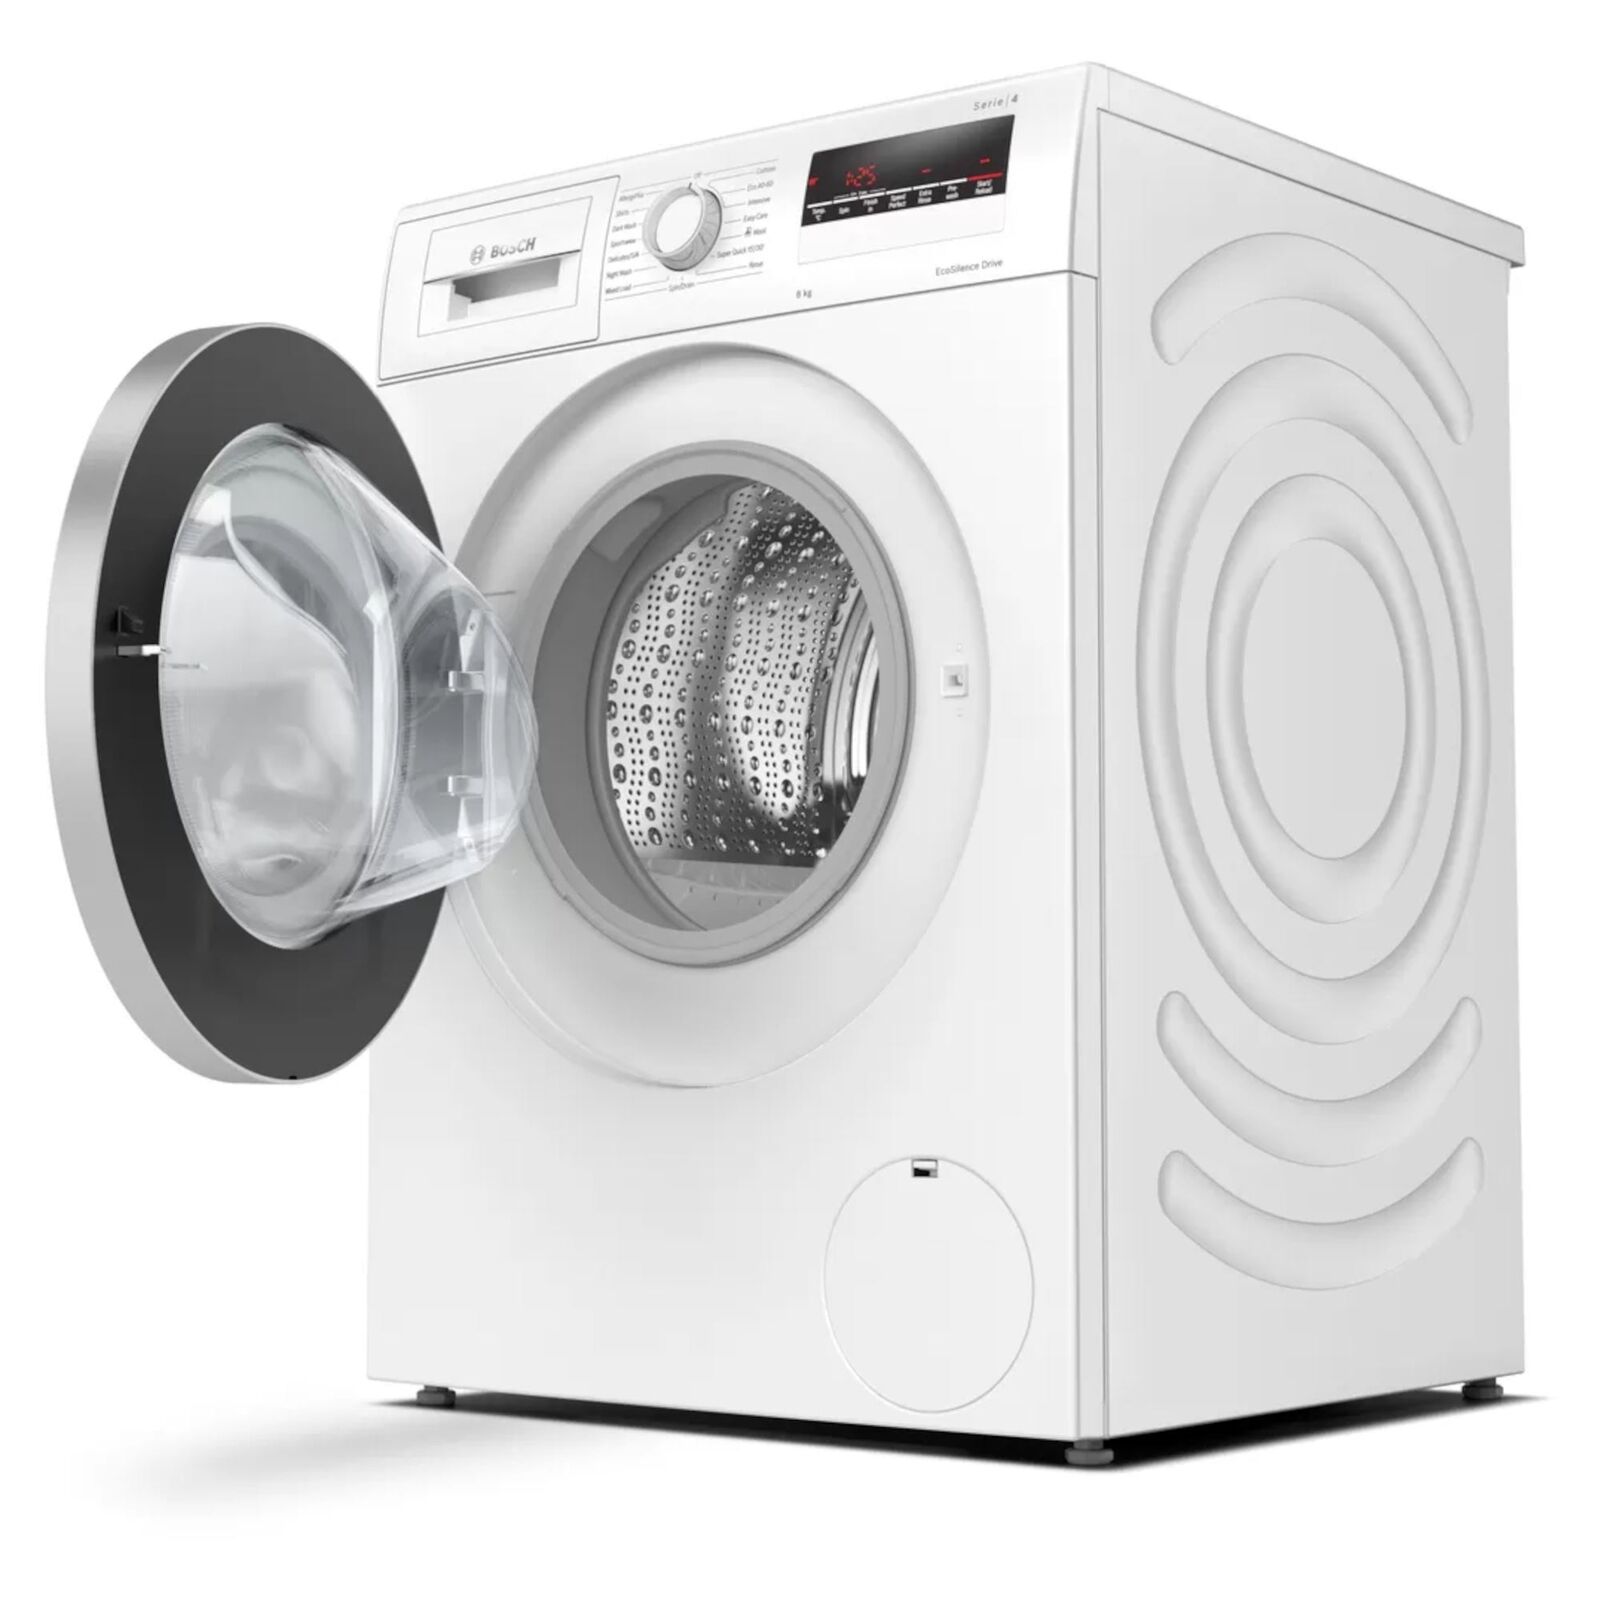 Bosch Series 4 washing machine, 8kg load